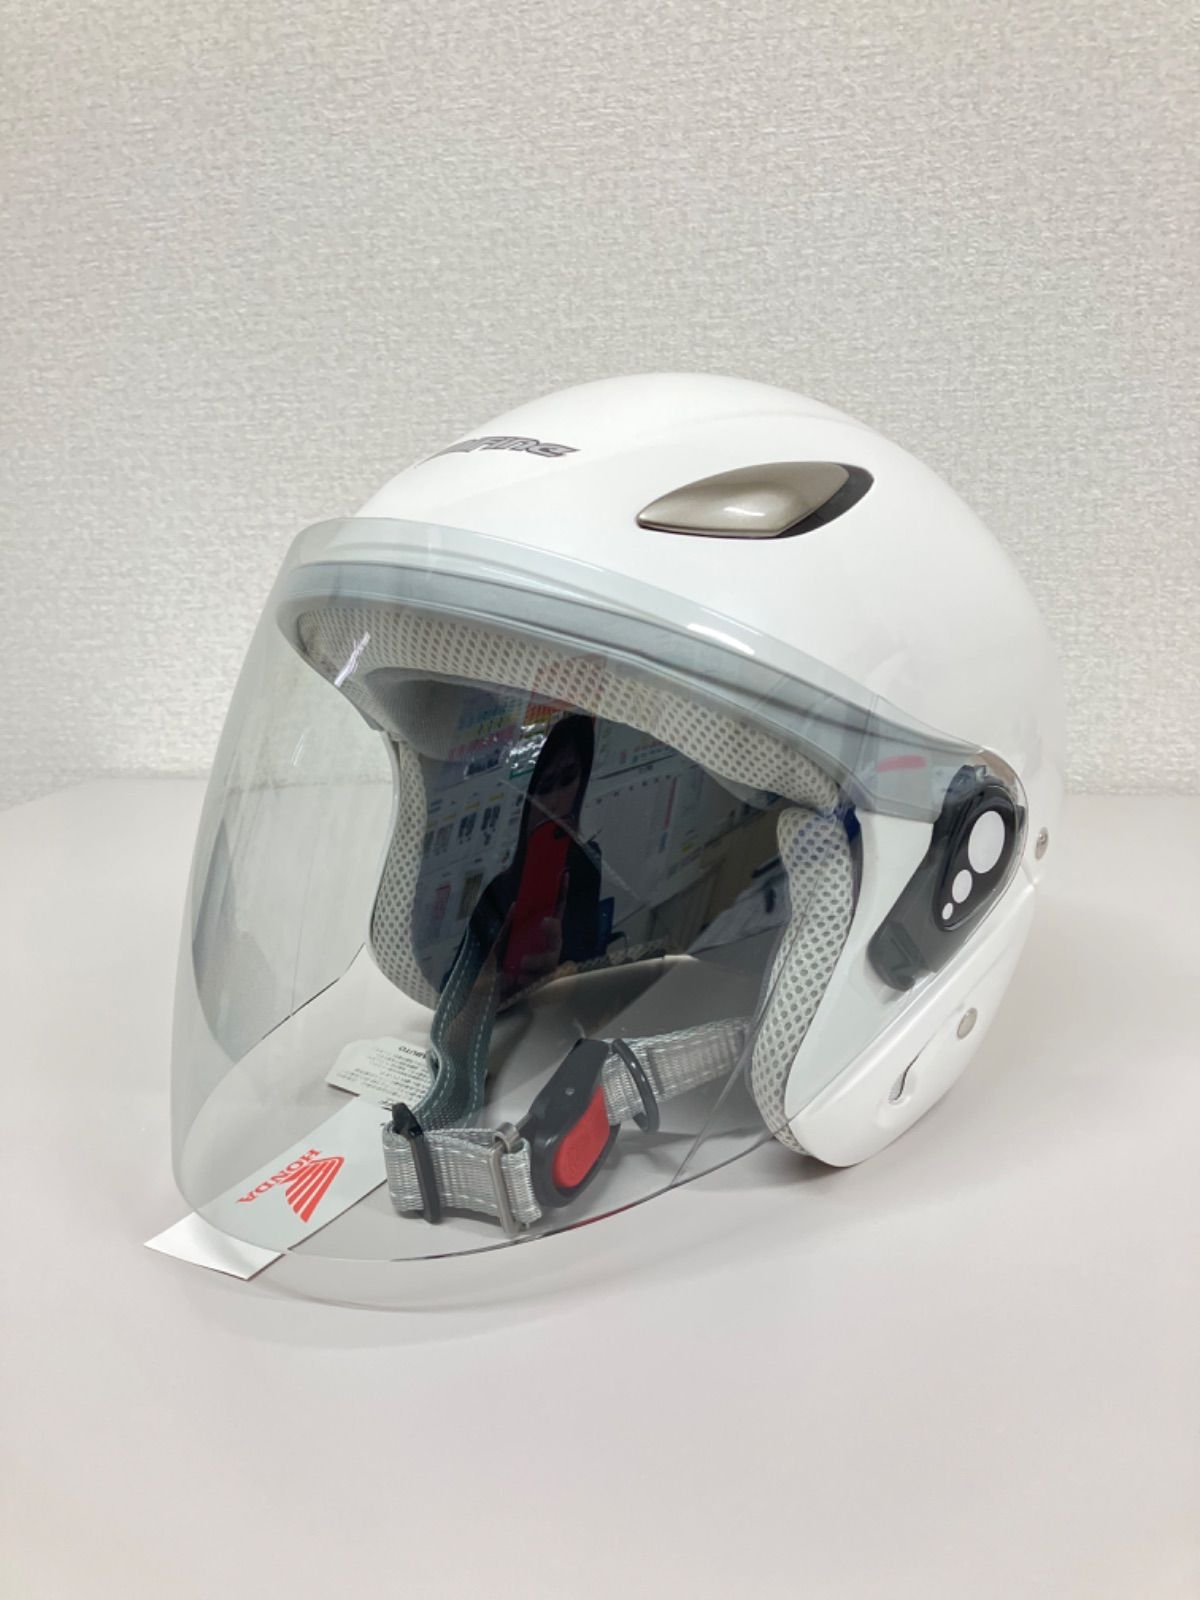 Honda(ホンダ) ヘルメット amifine アミファイン GB-FH1C - バイク